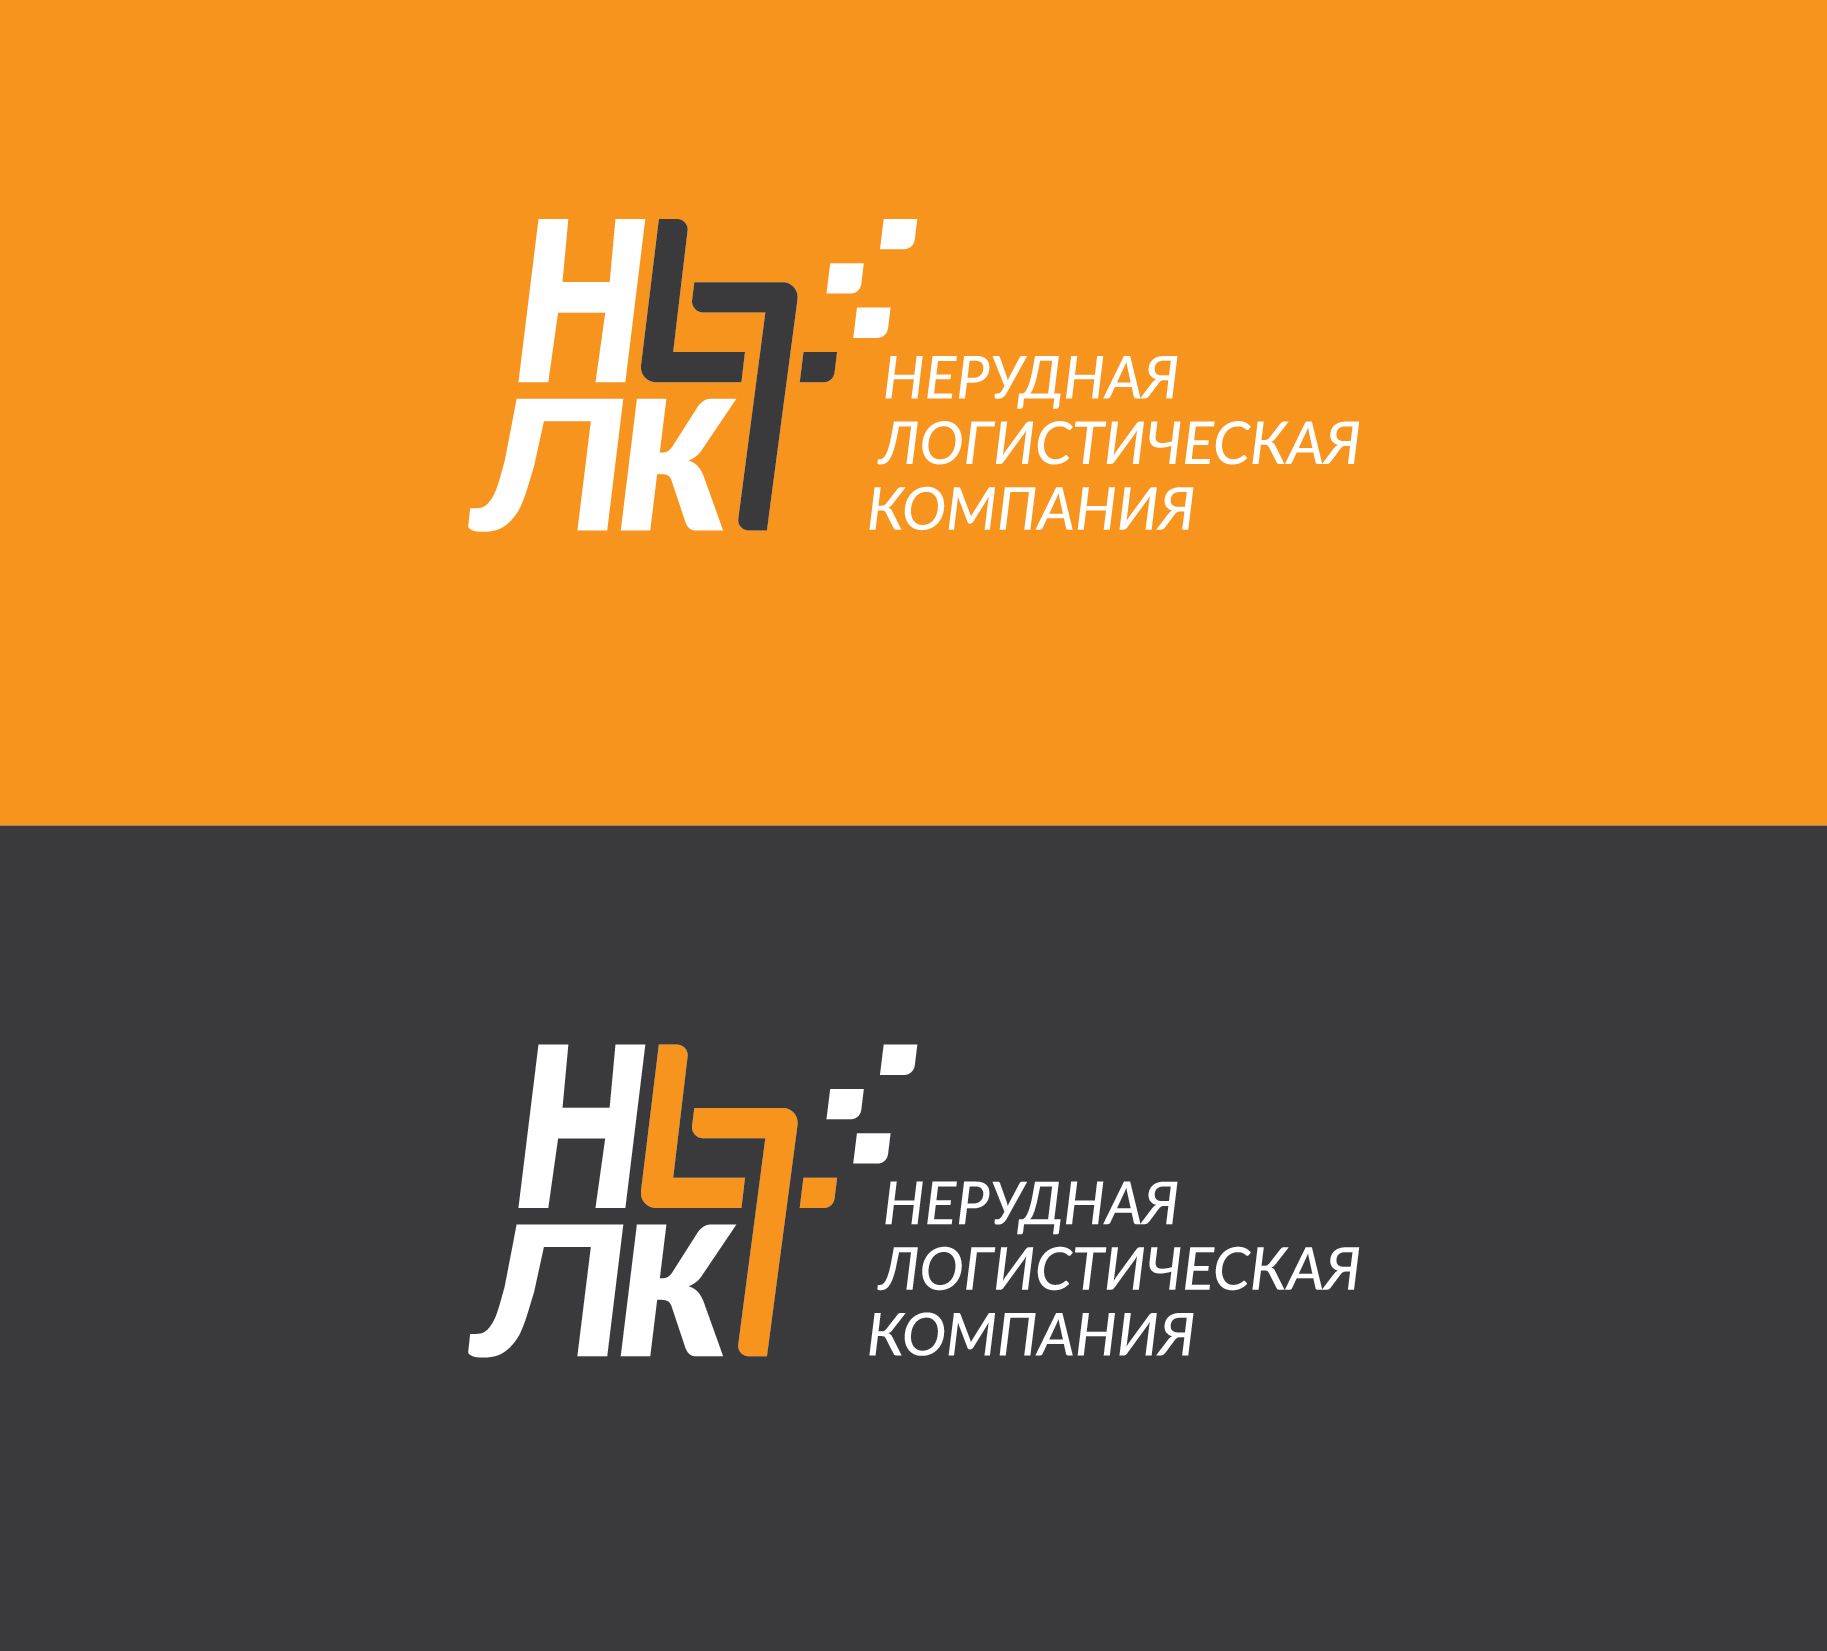 Лого и фирменный стиль для Нерудная логистическая компания 47 (НЛК 47) - дизайнер andyul